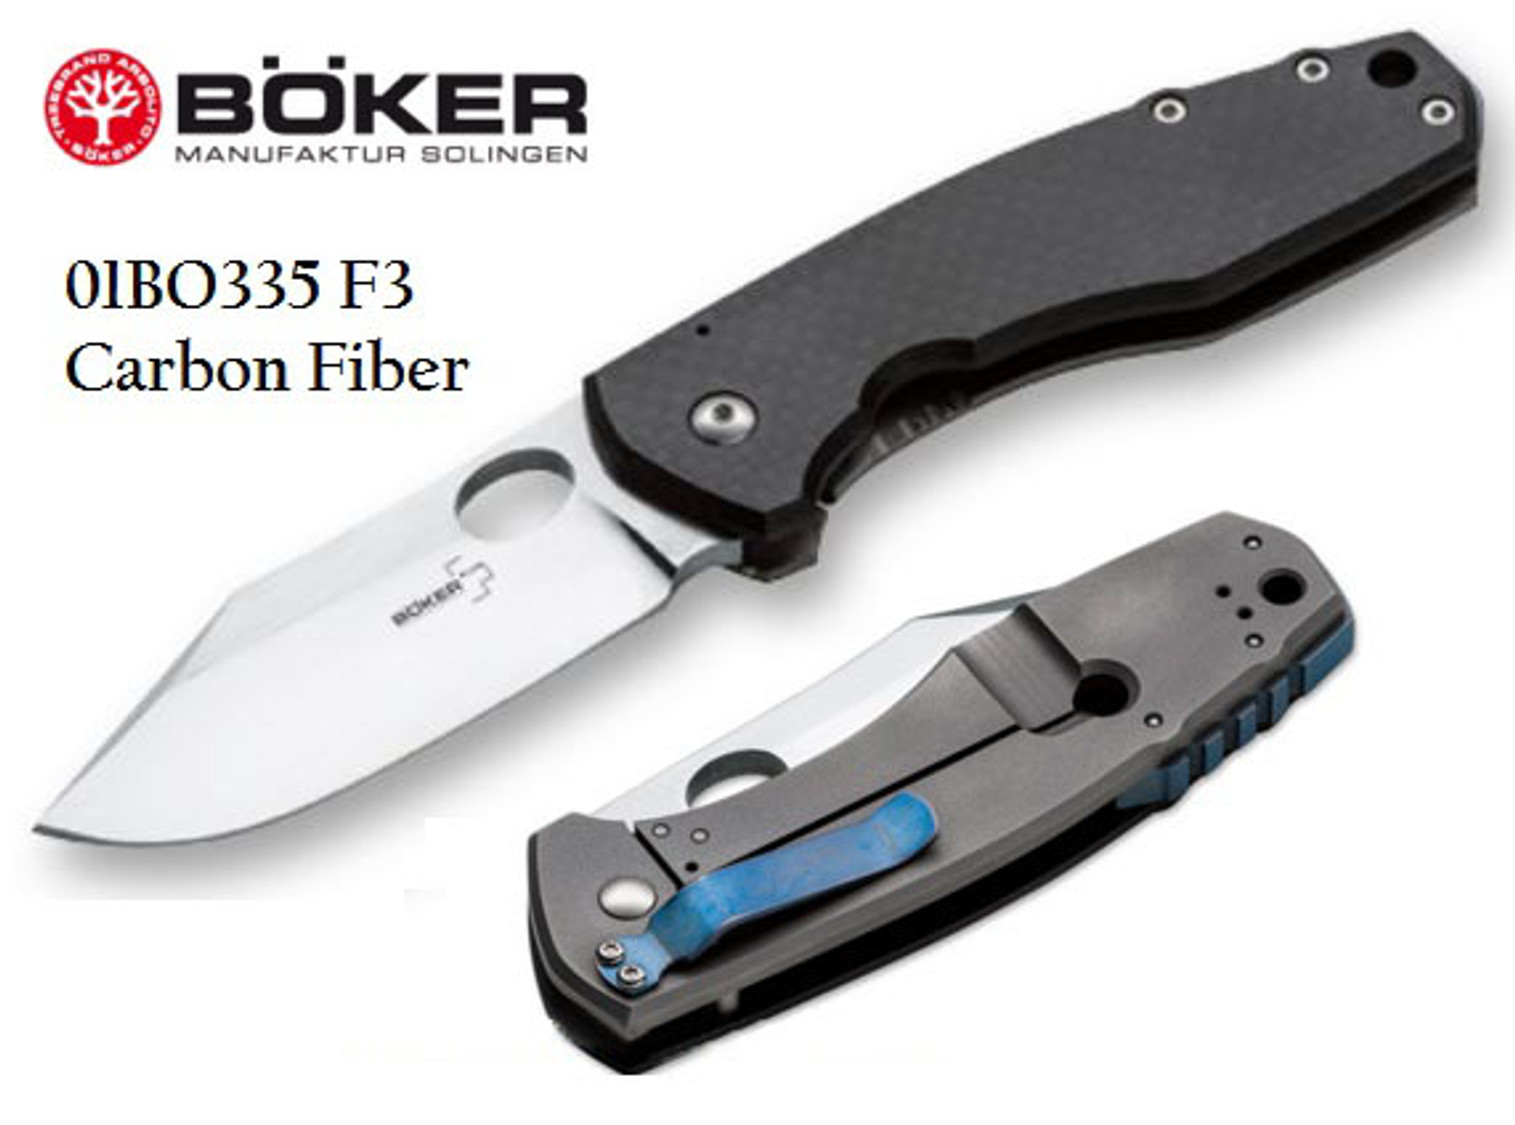 Boker Plus 01BO335 F3 3.5", Carbon Fiber, CPM-S35VN